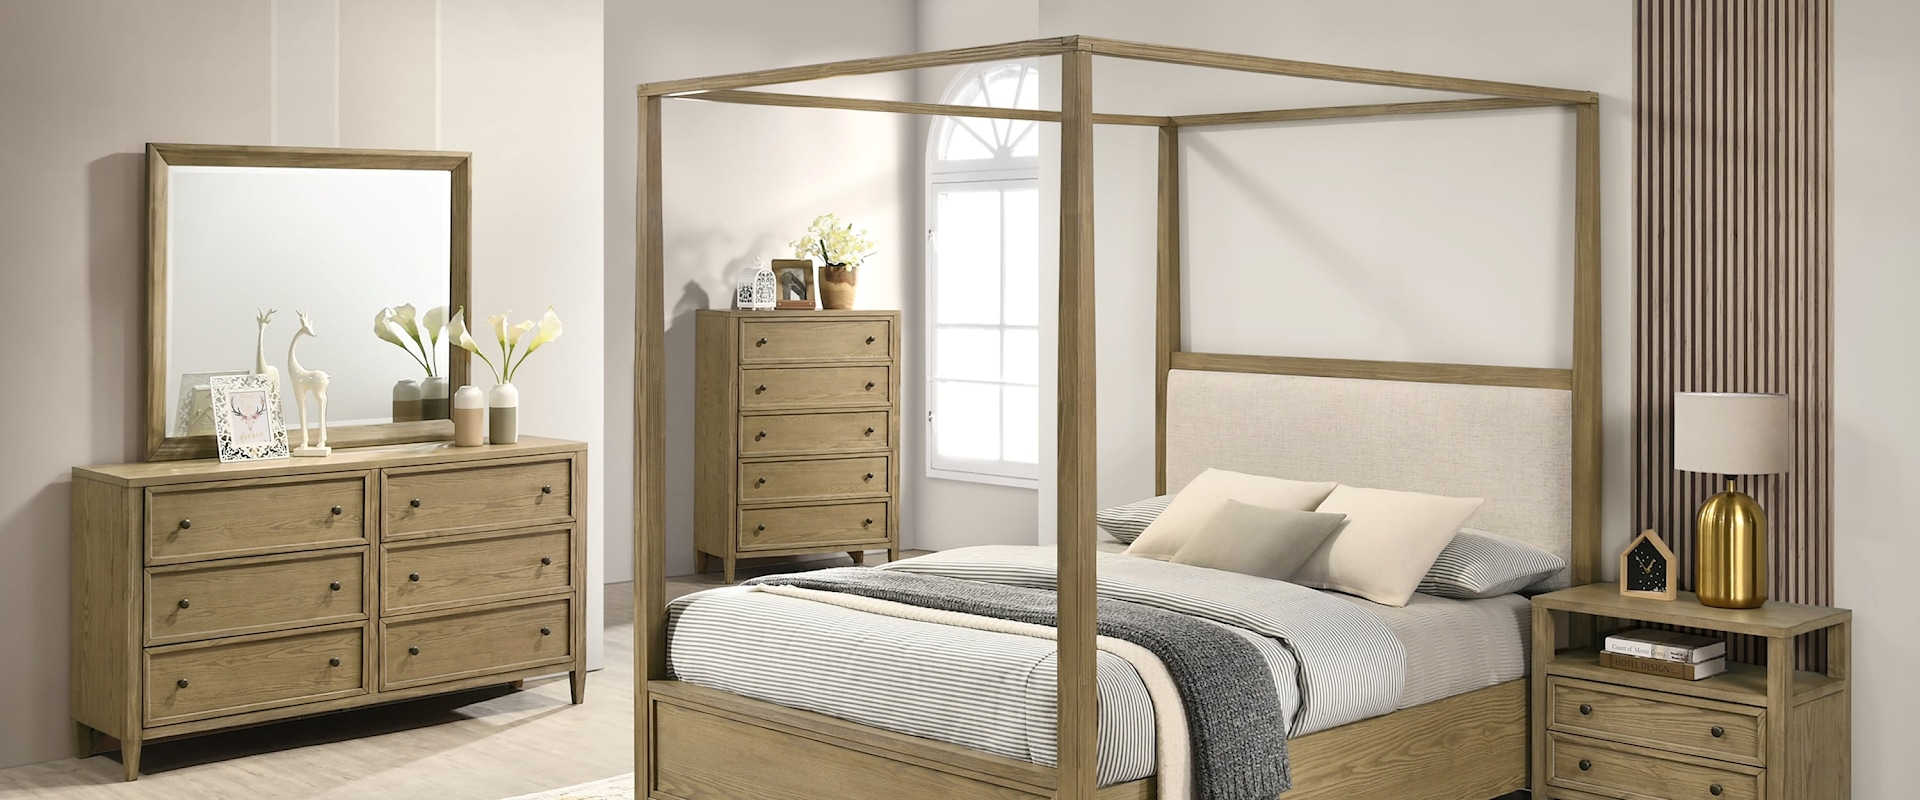 5-Piece Rustic Canopy Bed Bedroom Set - Queen